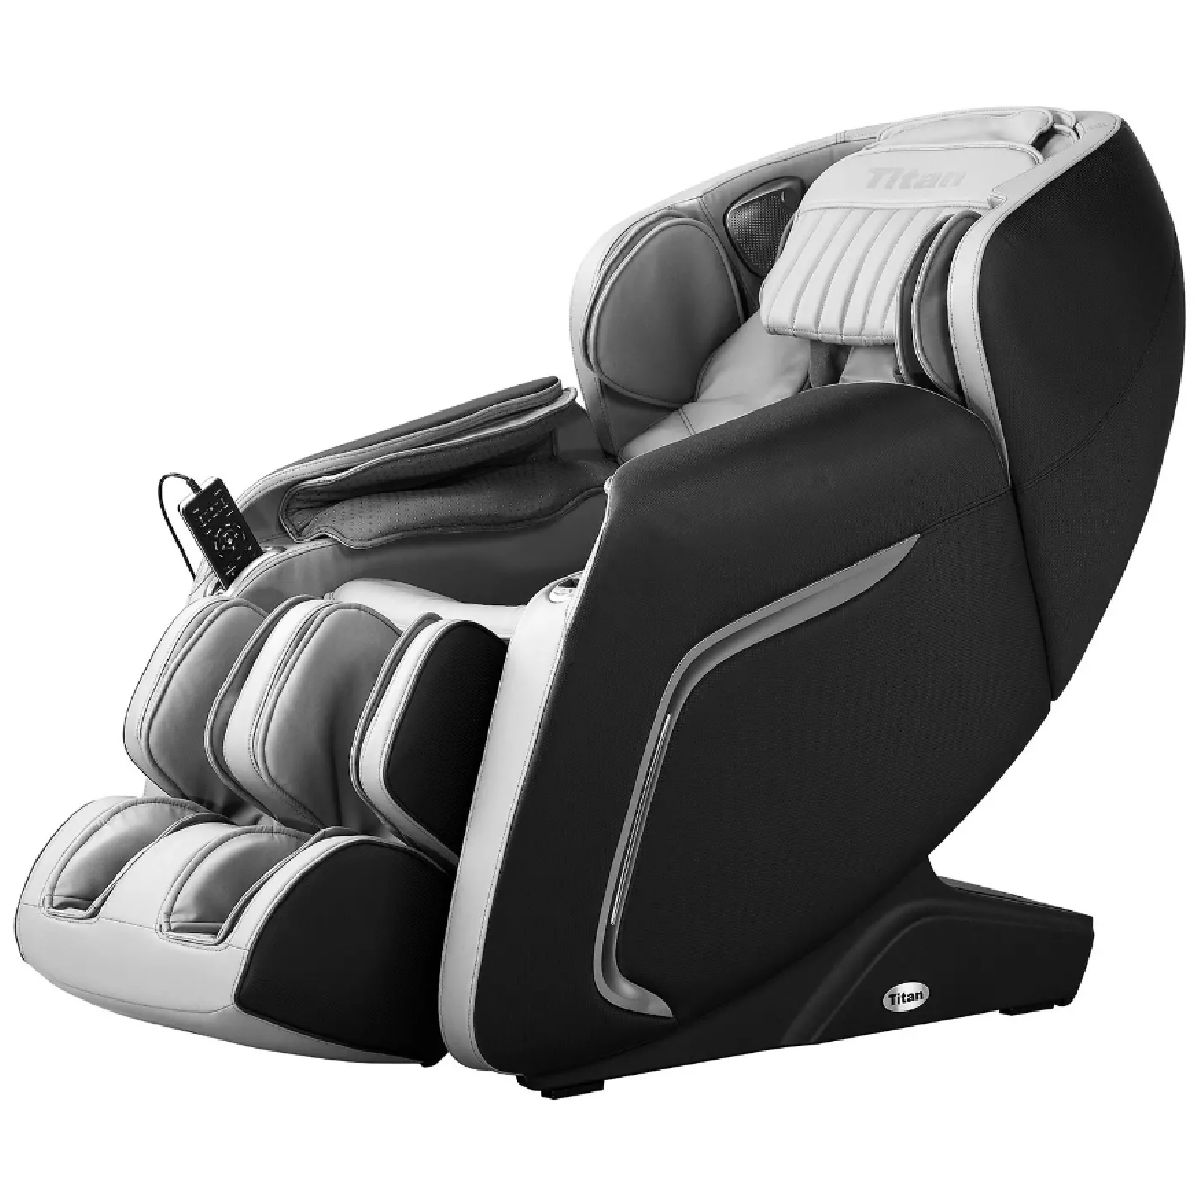 Osaki Titan TP-Pro Cosmo Zero Gravity Massage Chair